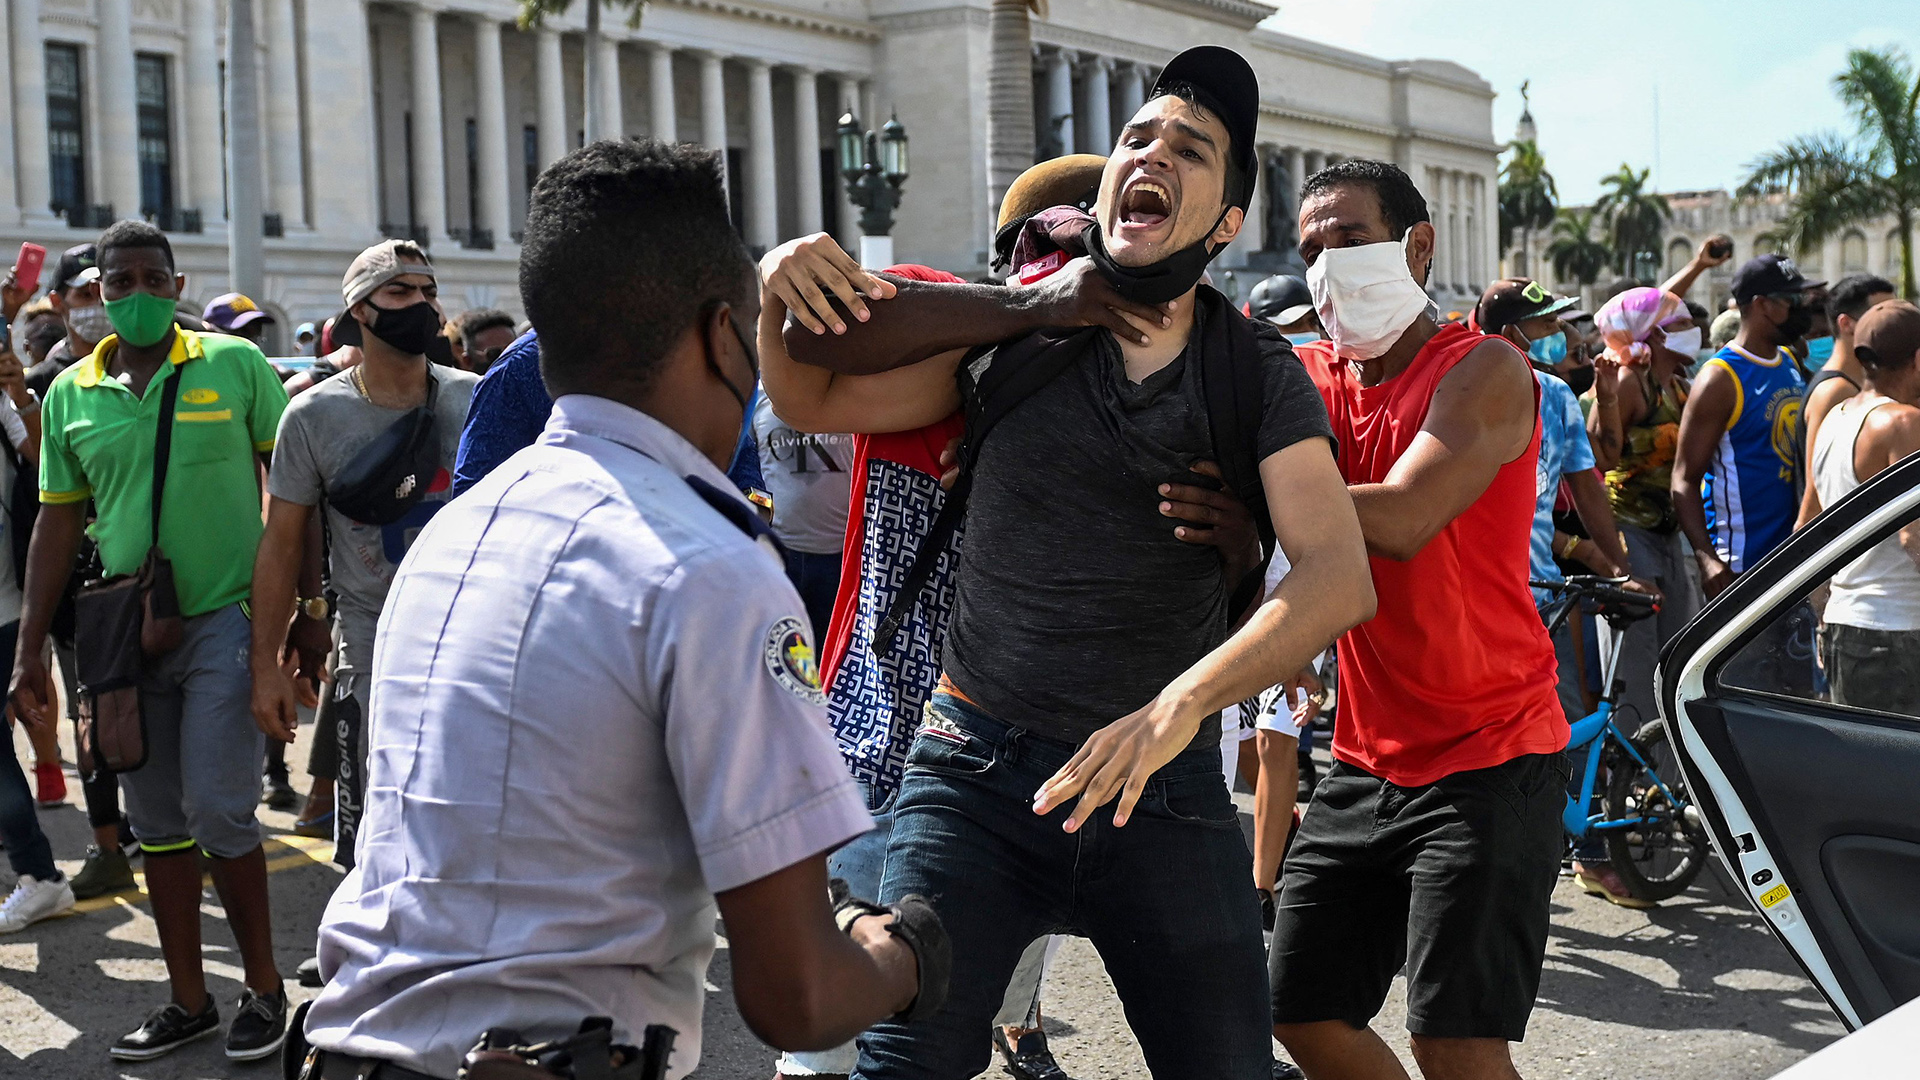 Ein Mann wird während einer Demonstration gegen die Regierung Kubas verhaftet (Archivfoto vom 11. Juli 2021). | AFP